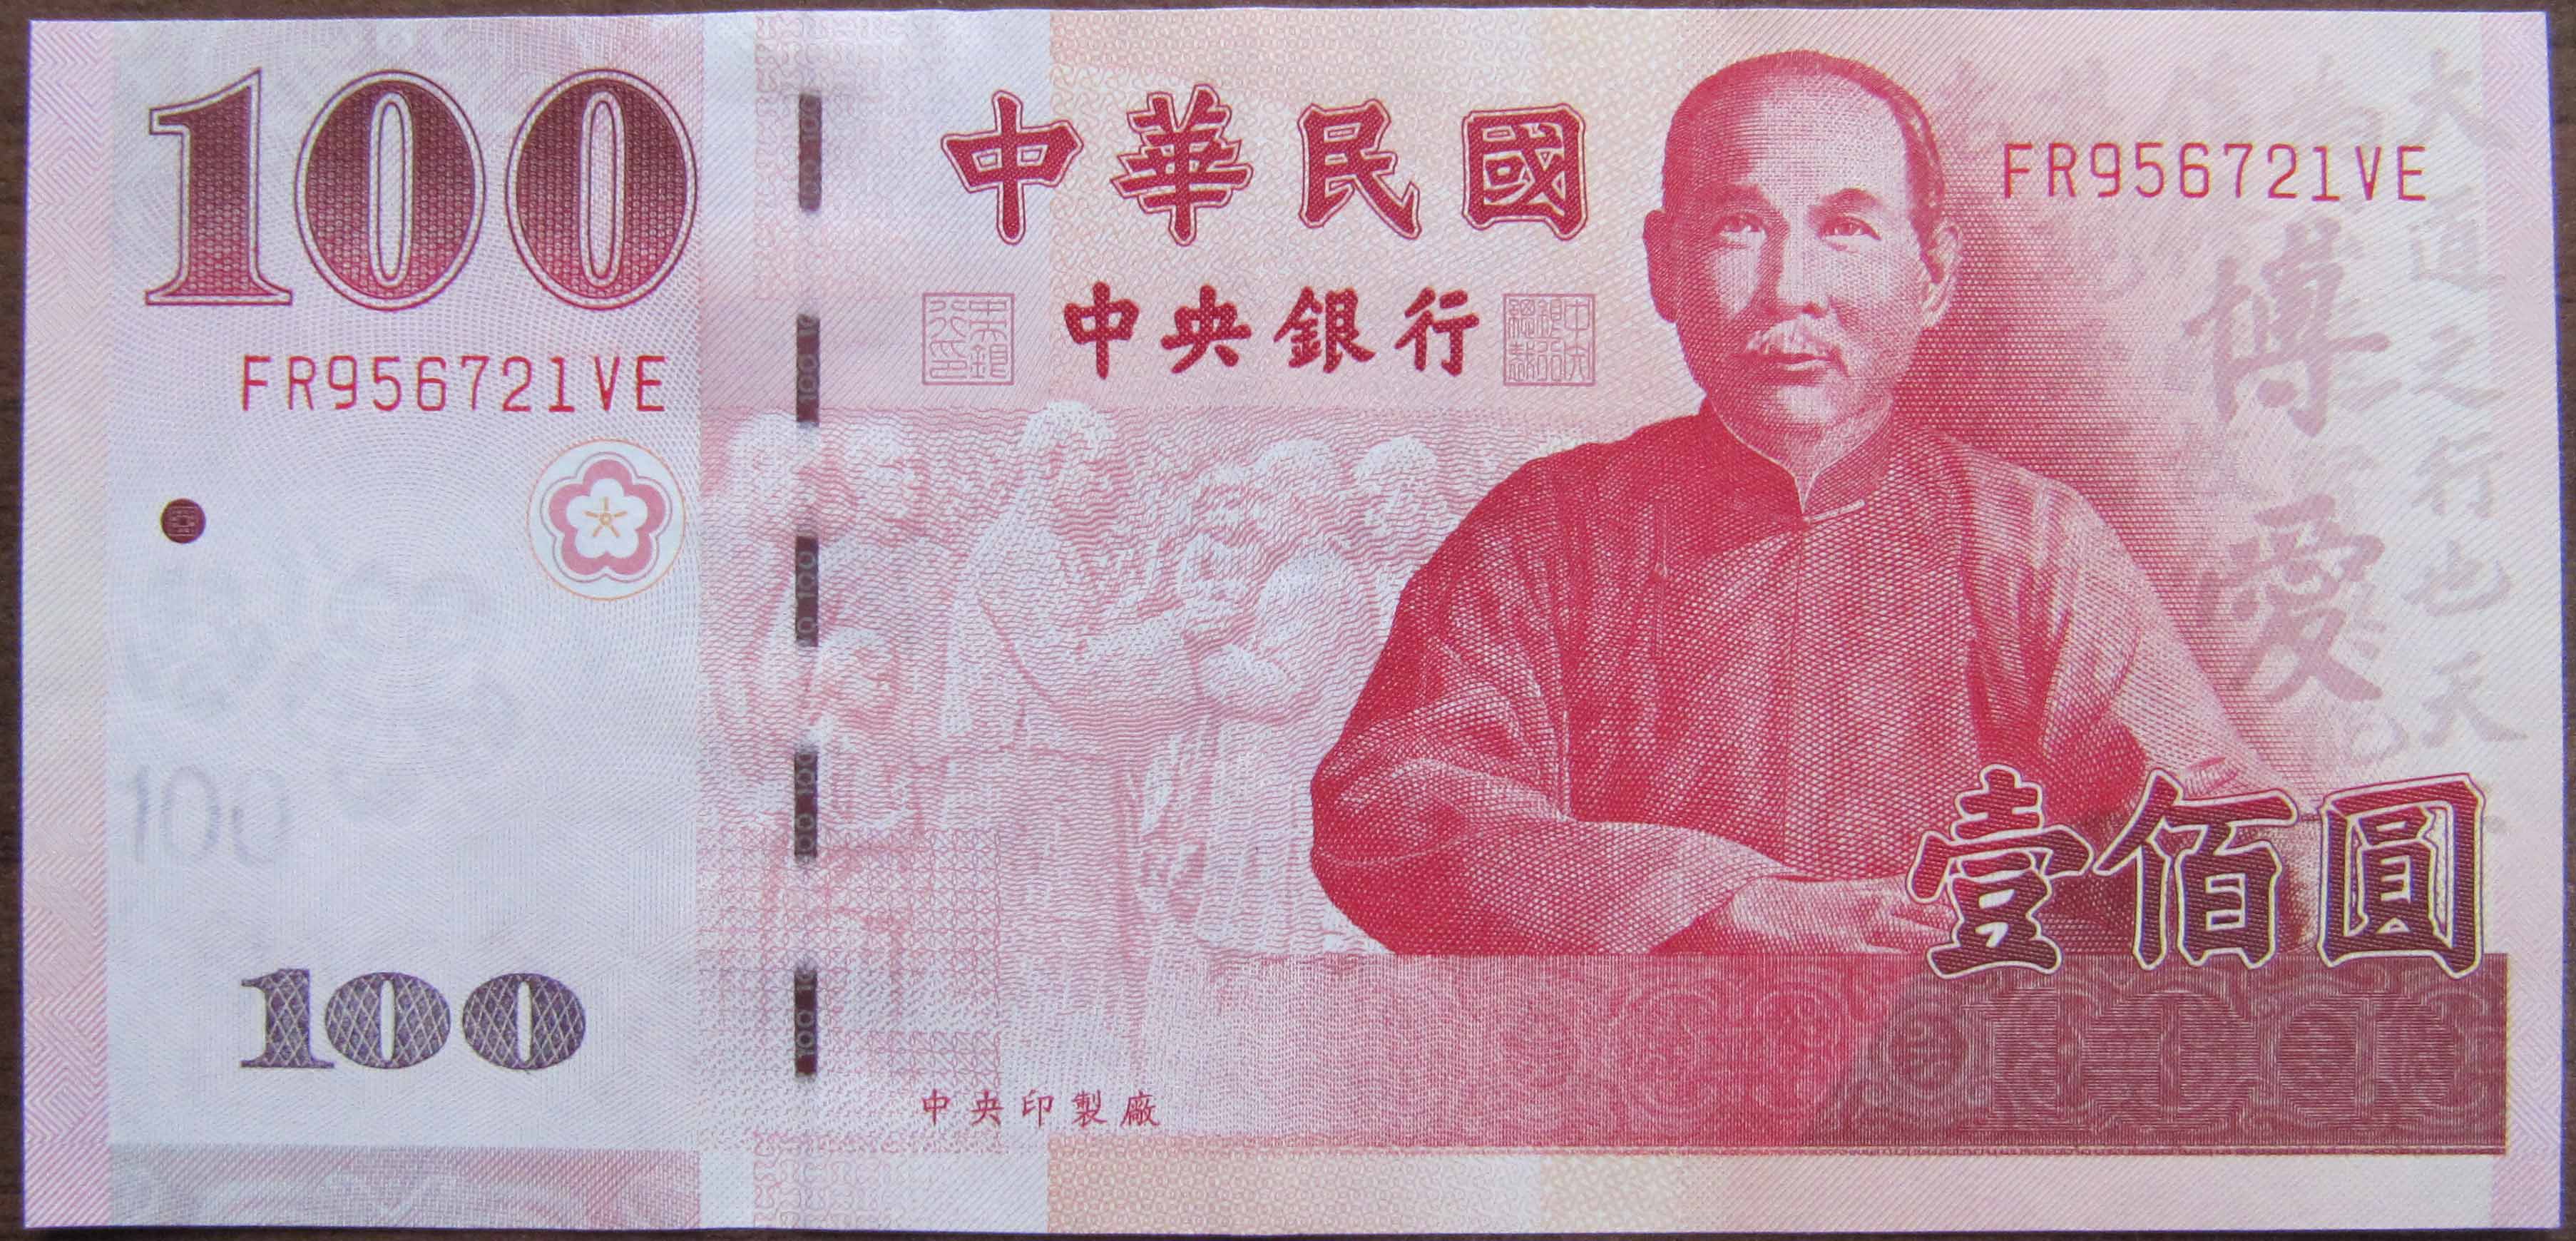 Тайвань деньги. Банкнот "100 юаней" КНР. Банкнота 100 юаней Тайвань. Китайская купюра 100 юаней. Тайваньский доллар.